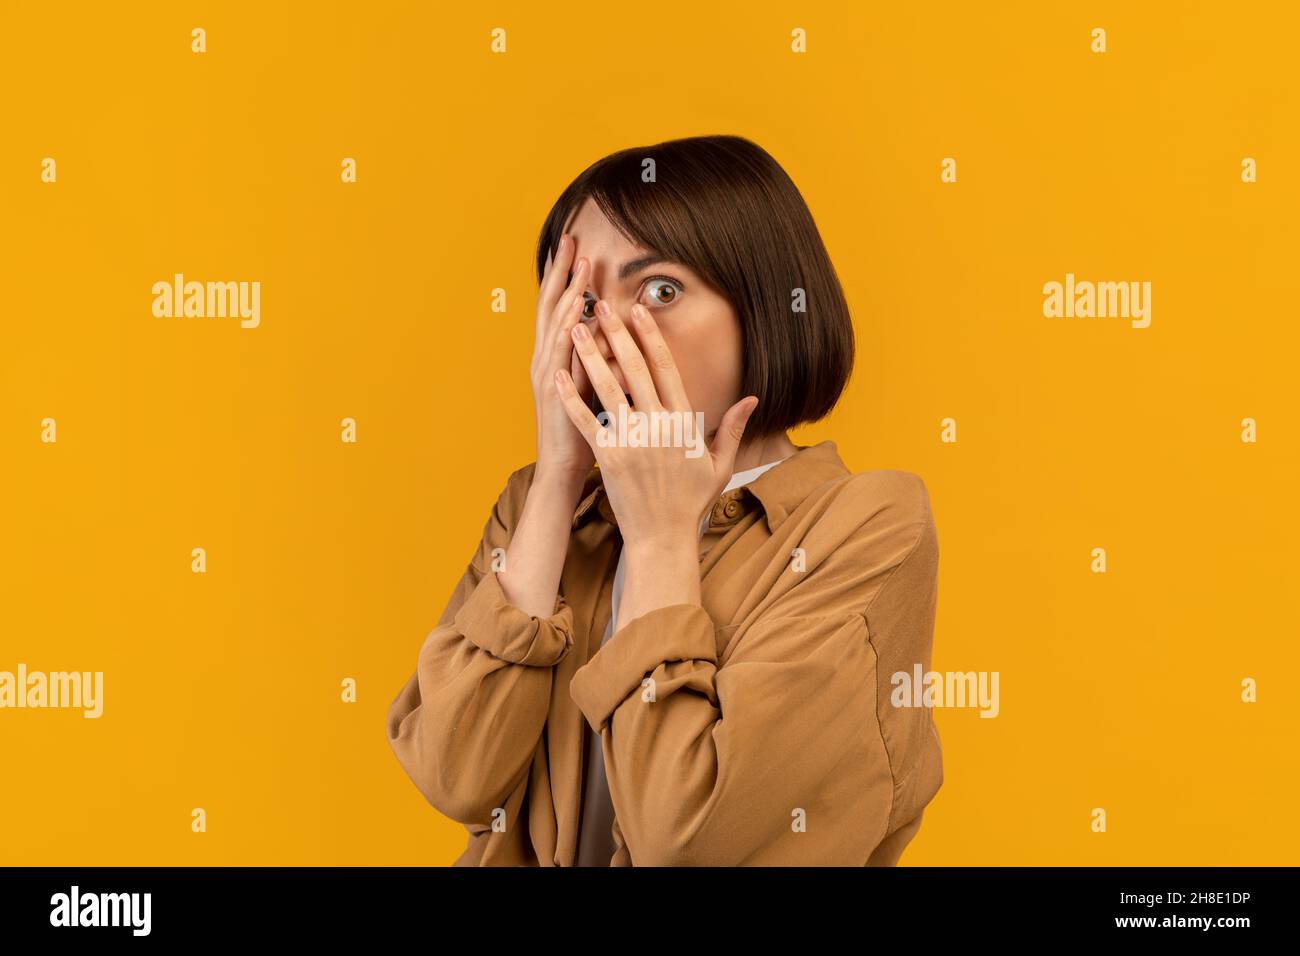 Femme effrayée couvrant le visage avec les mains et peeking avec un oeil, se sentant peur, debout sur fond jaune Banque D'Images